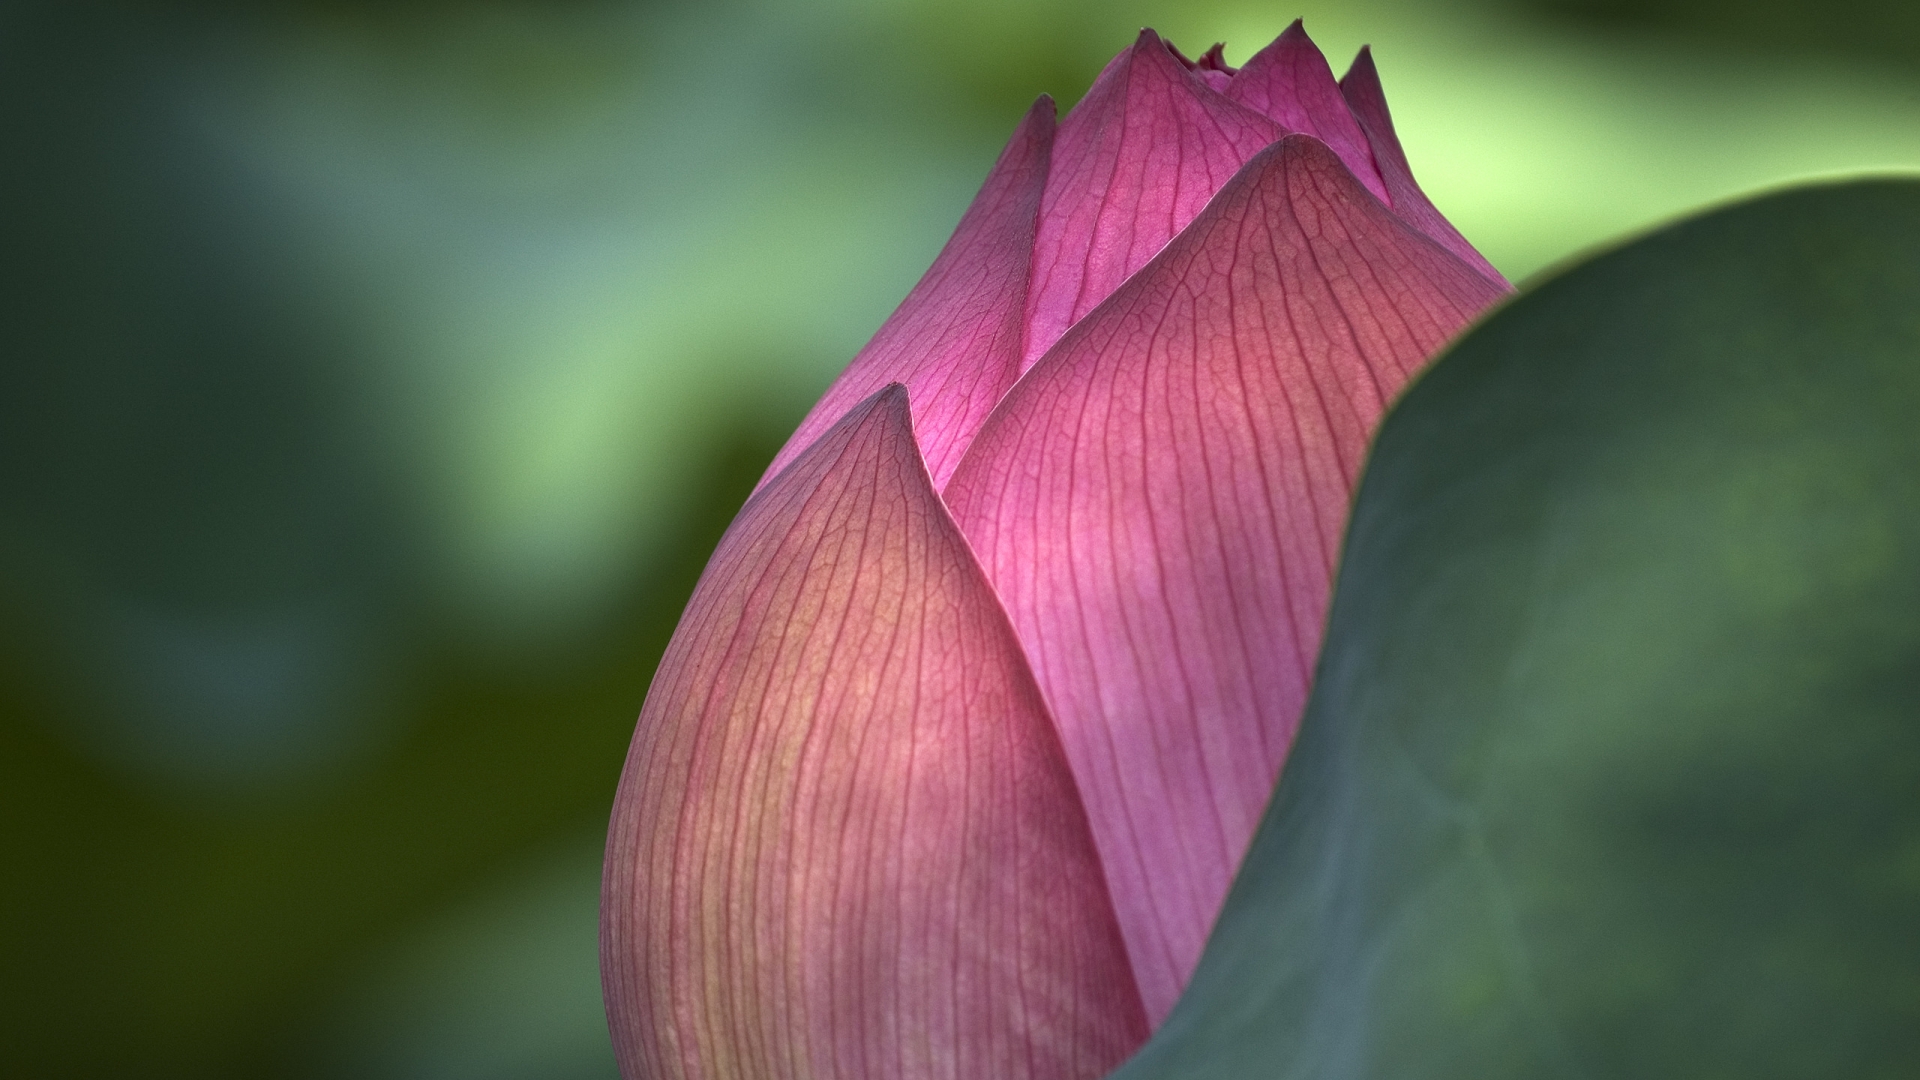 Lotus Flower for 1920 x 1080 HDTV 1080p resolution